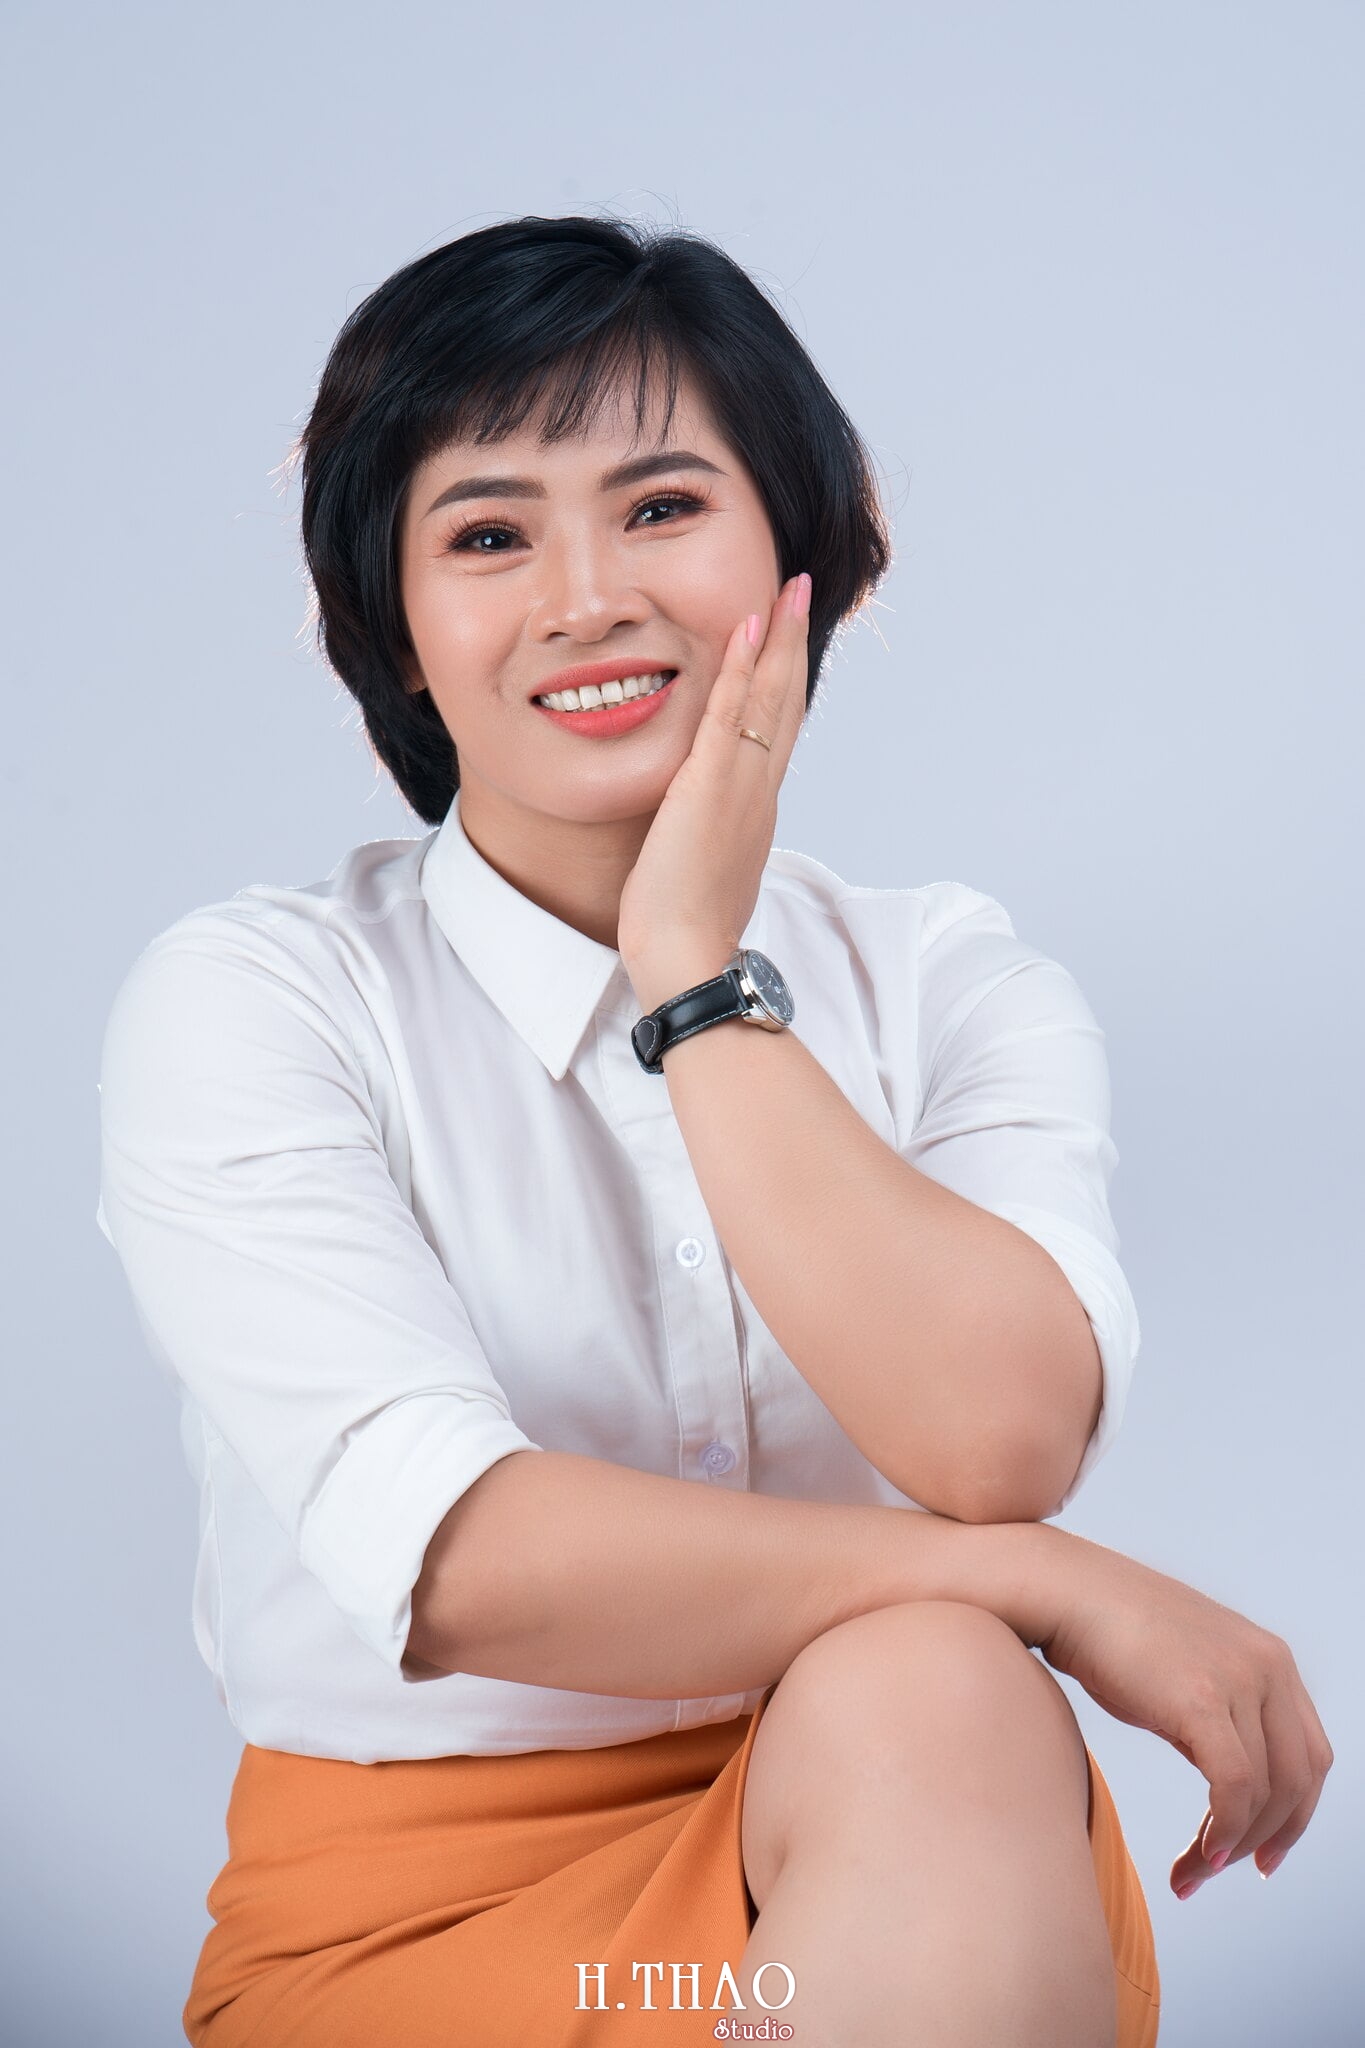 chan dung nghe nghiep 4 - Album ảnh profile cá nhân chị Ny Manulife - HThao Studio